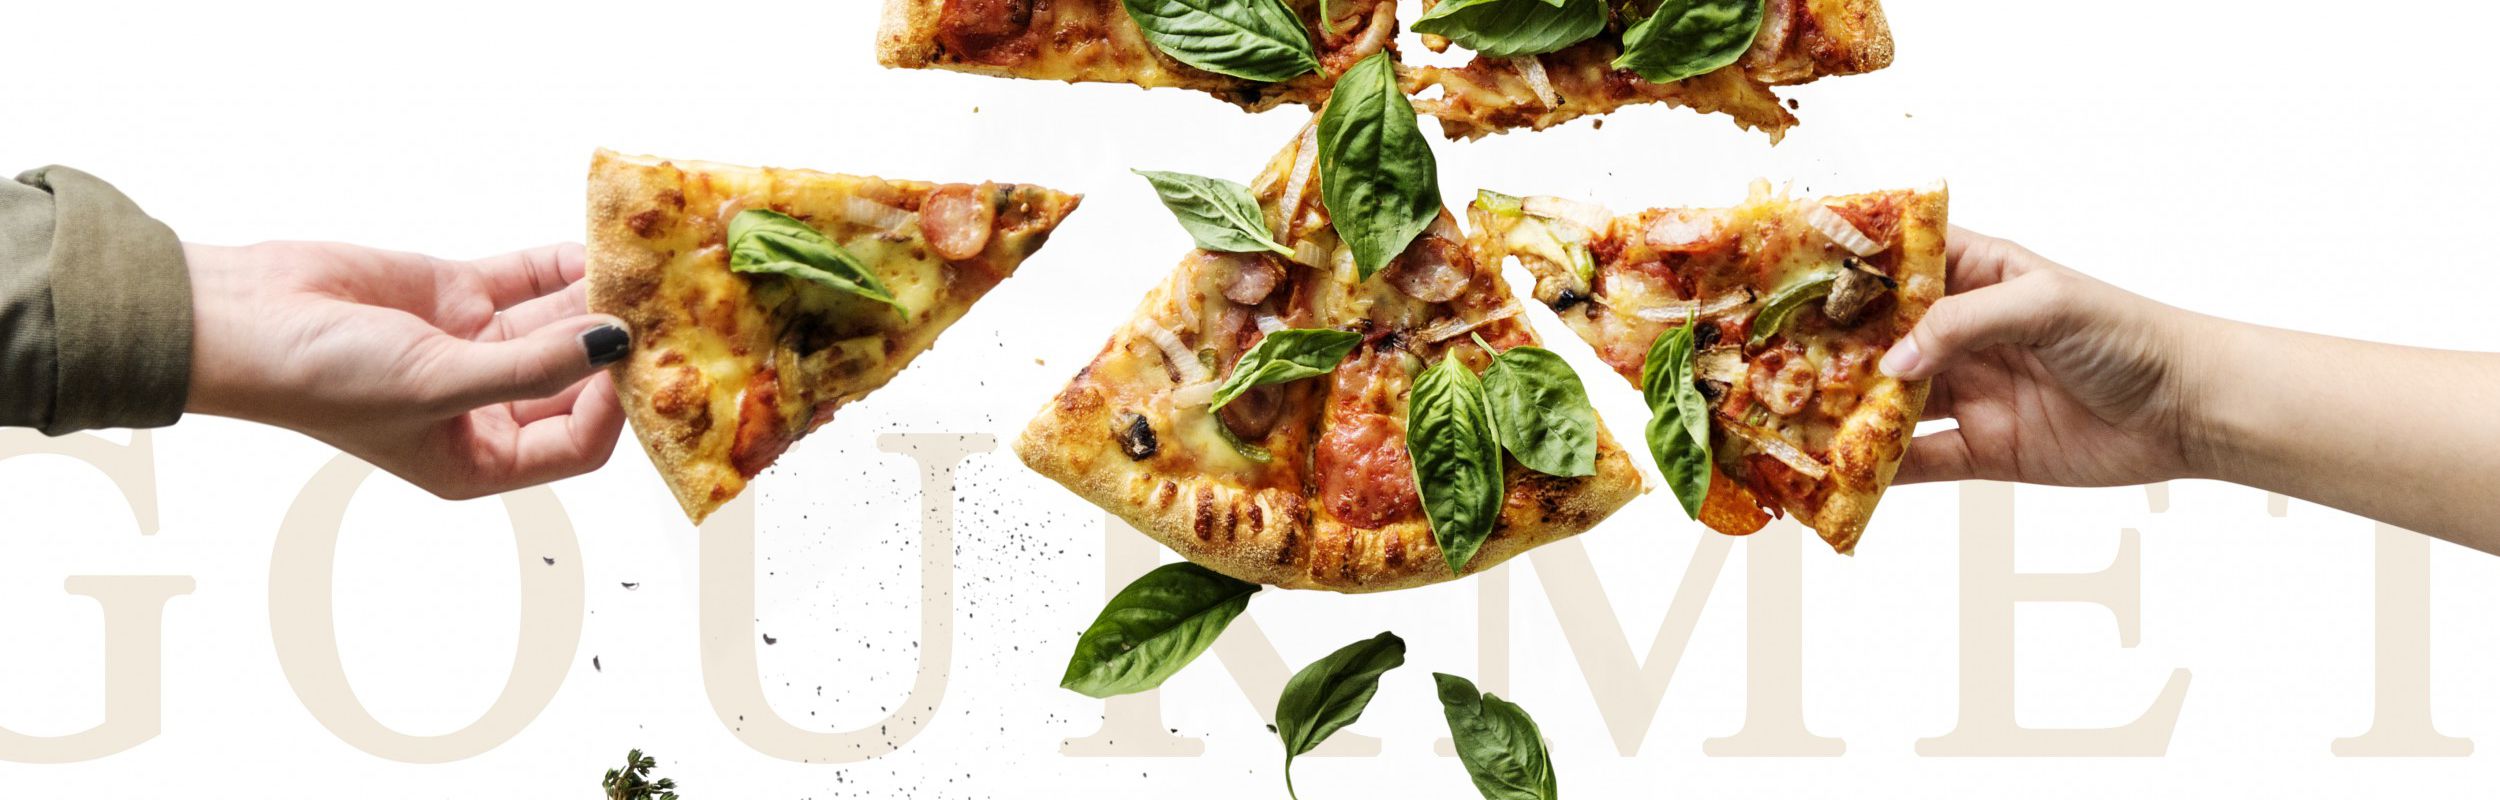 Pizze e pinse gourmet con ingredienti di stagione da gustare a casa tua.  